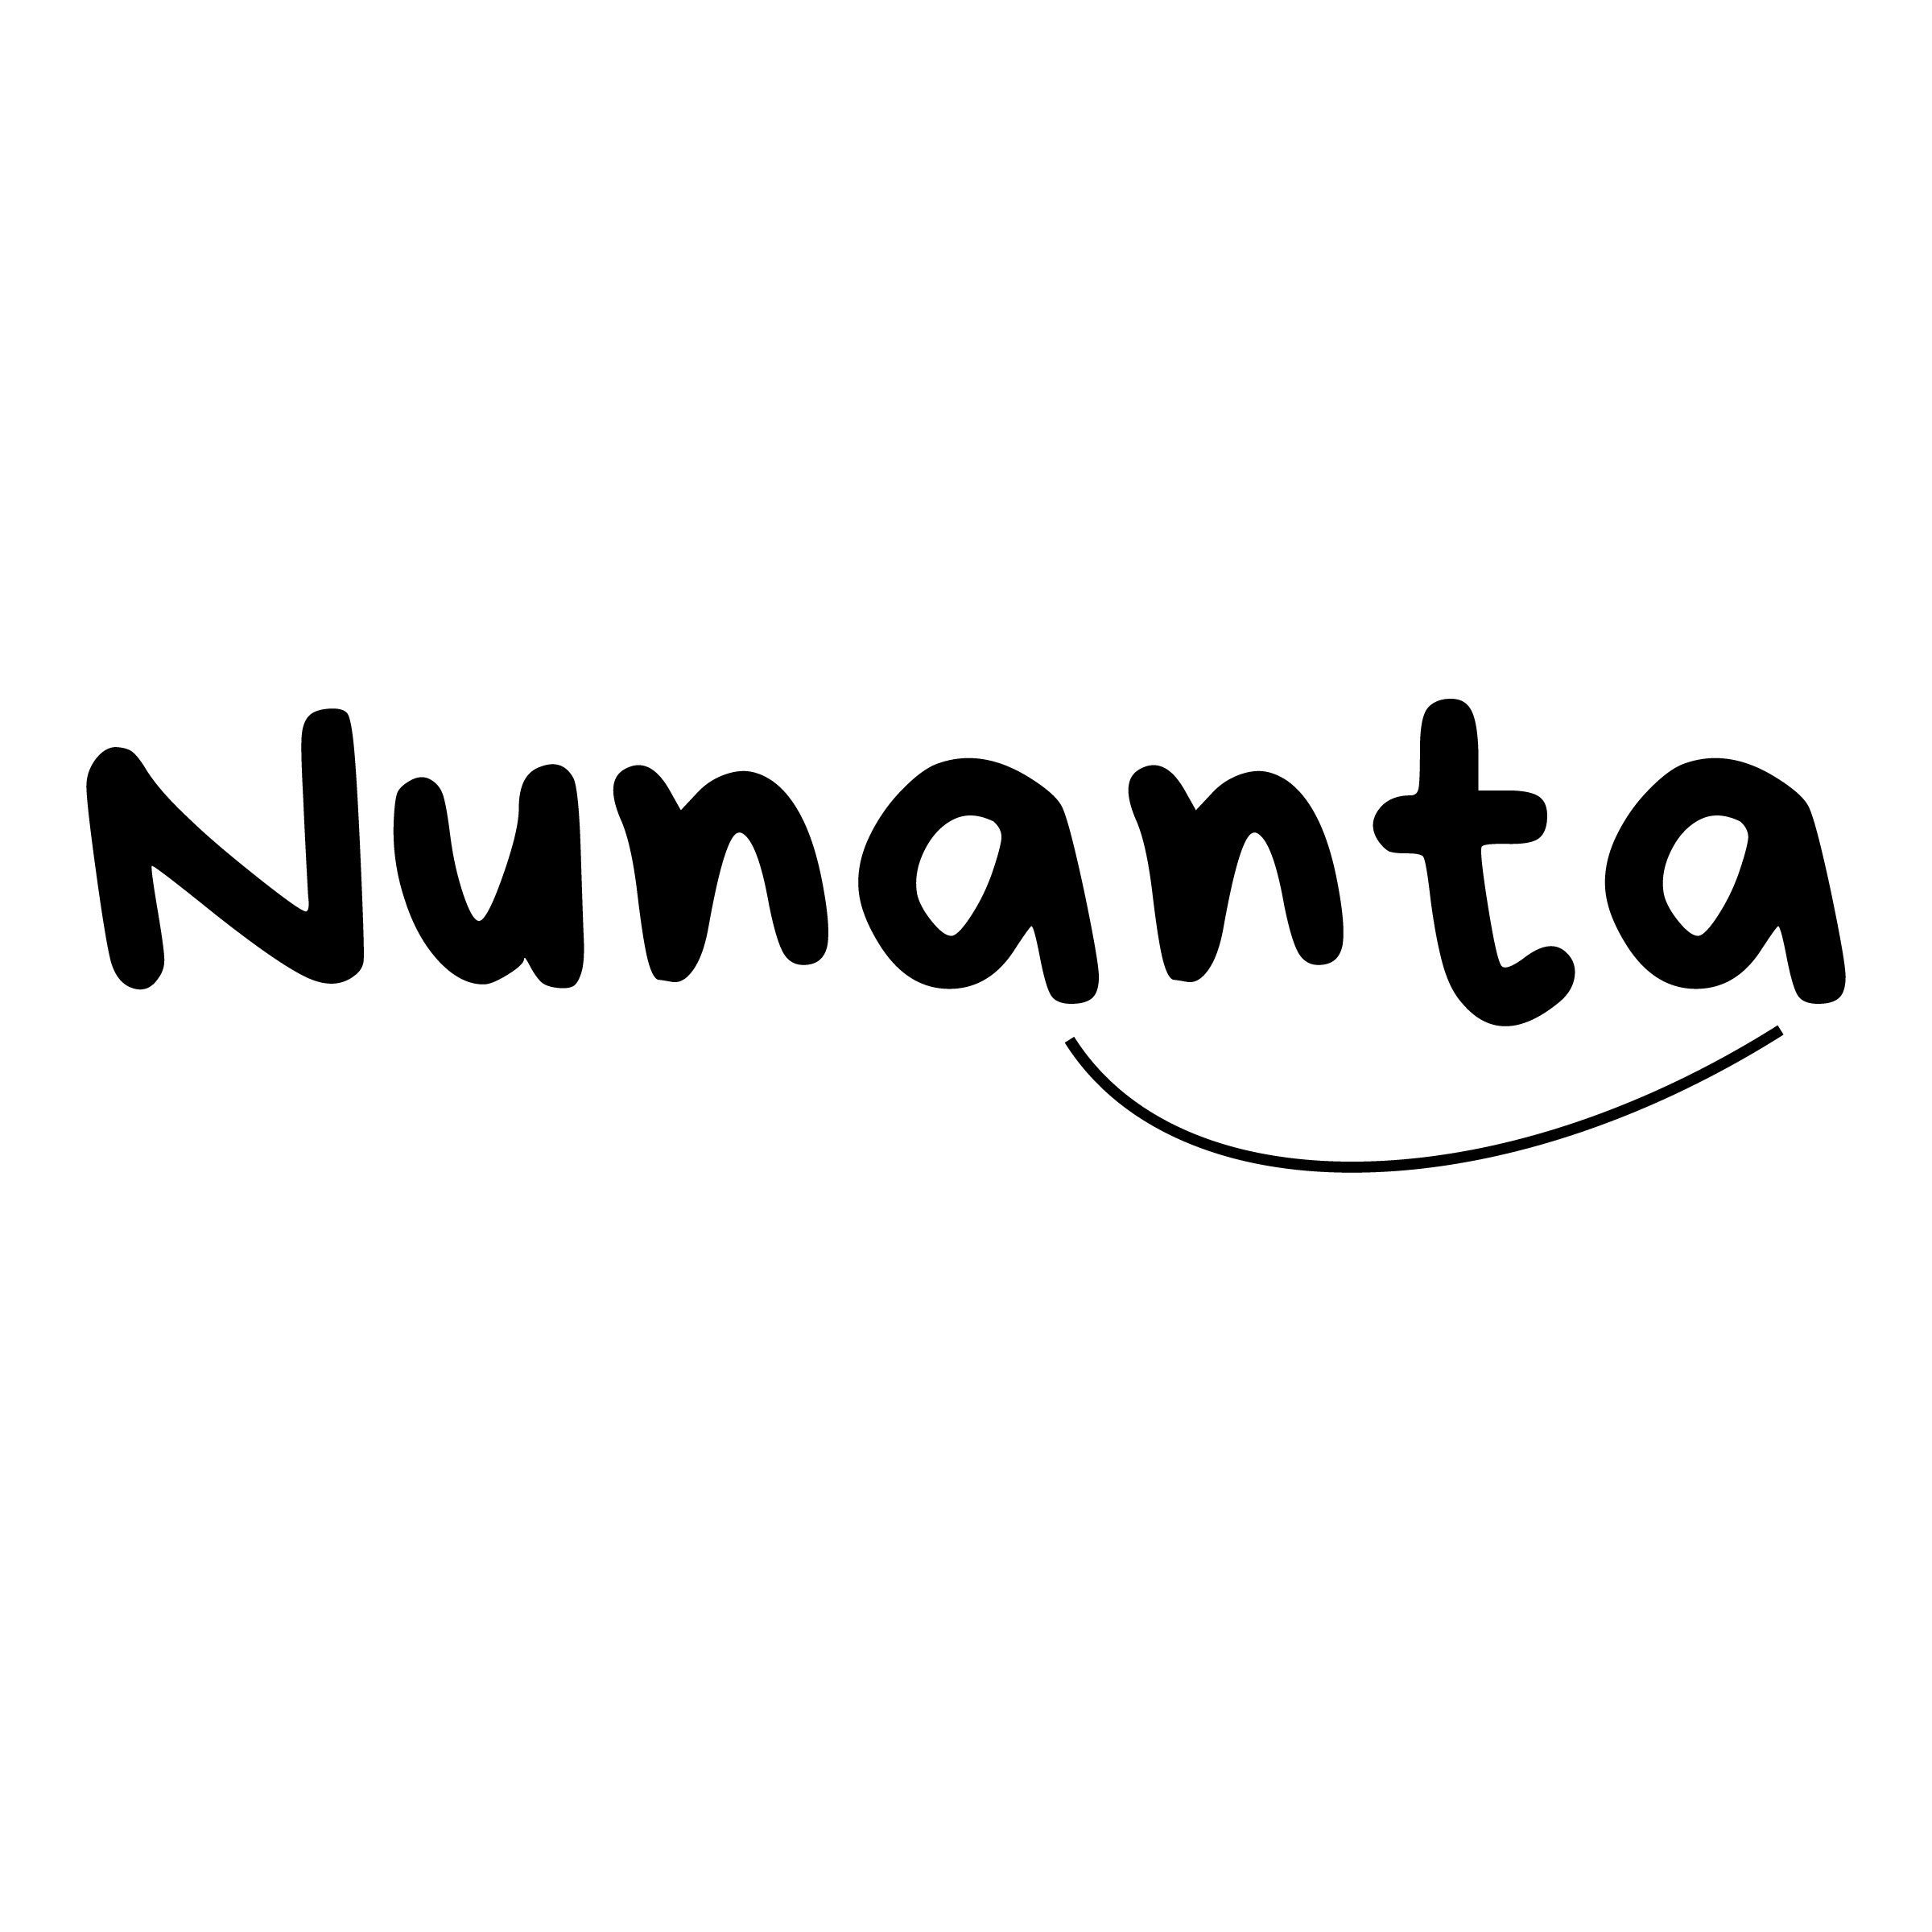 Nunanta